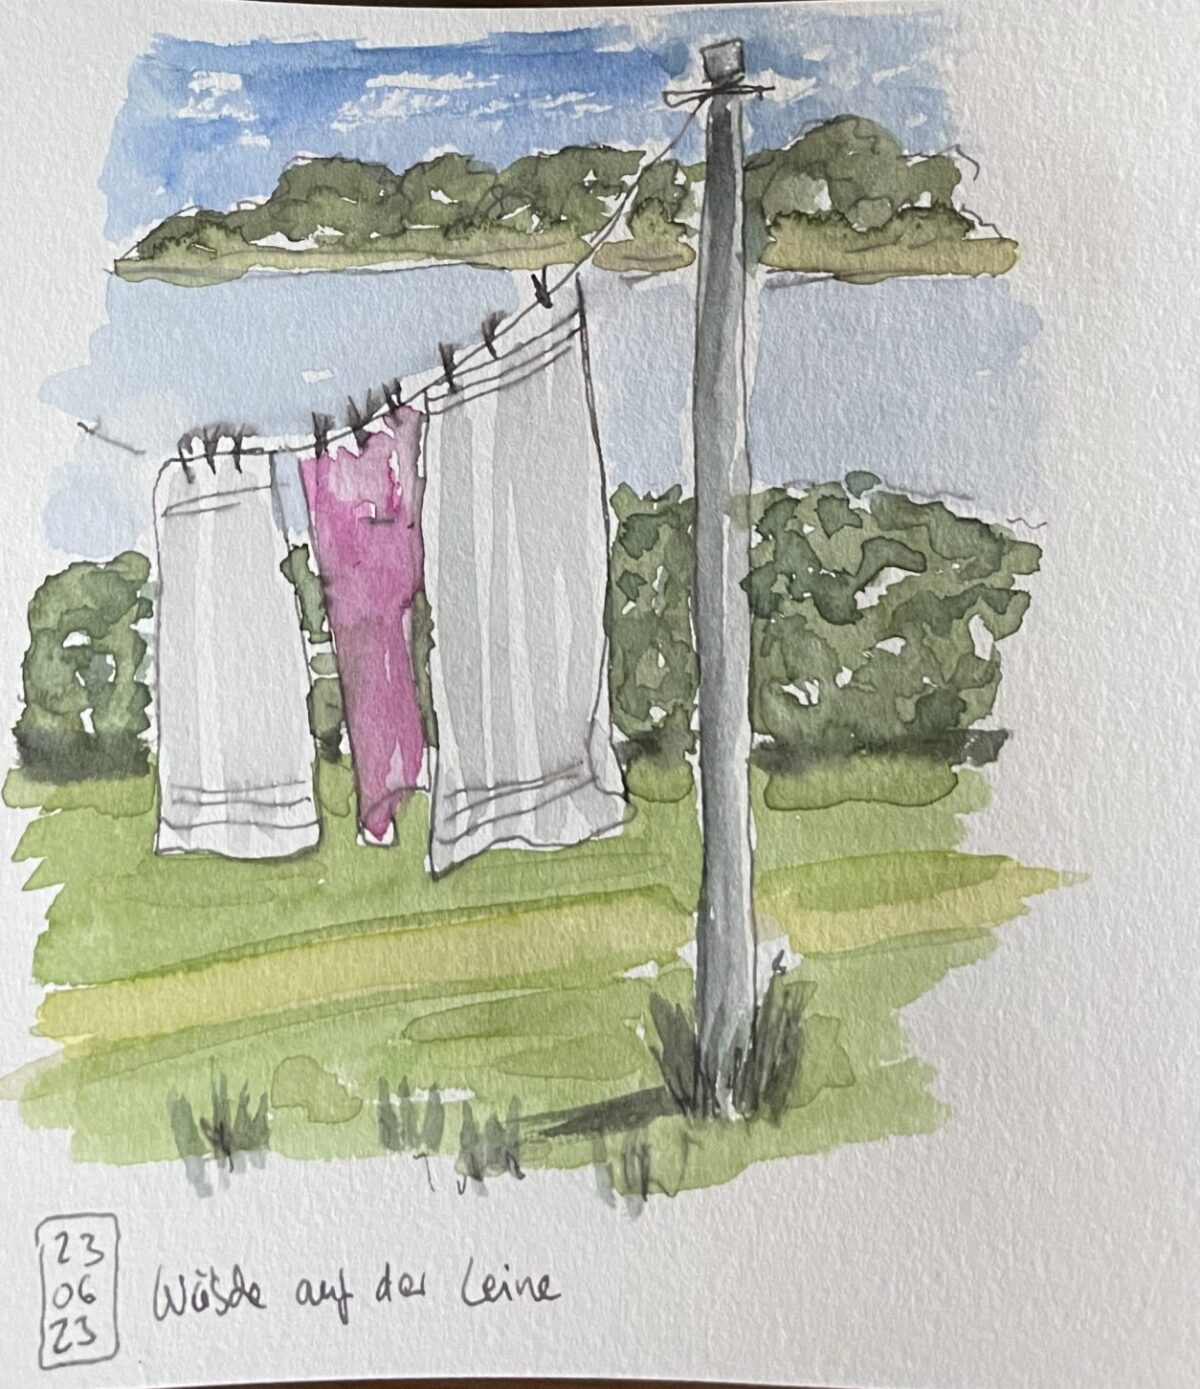 Ein Motiv im Skizzenbuch: ein kleines Aquarell von 3 Handtüchern auf einer Wäscheleine im Garten.